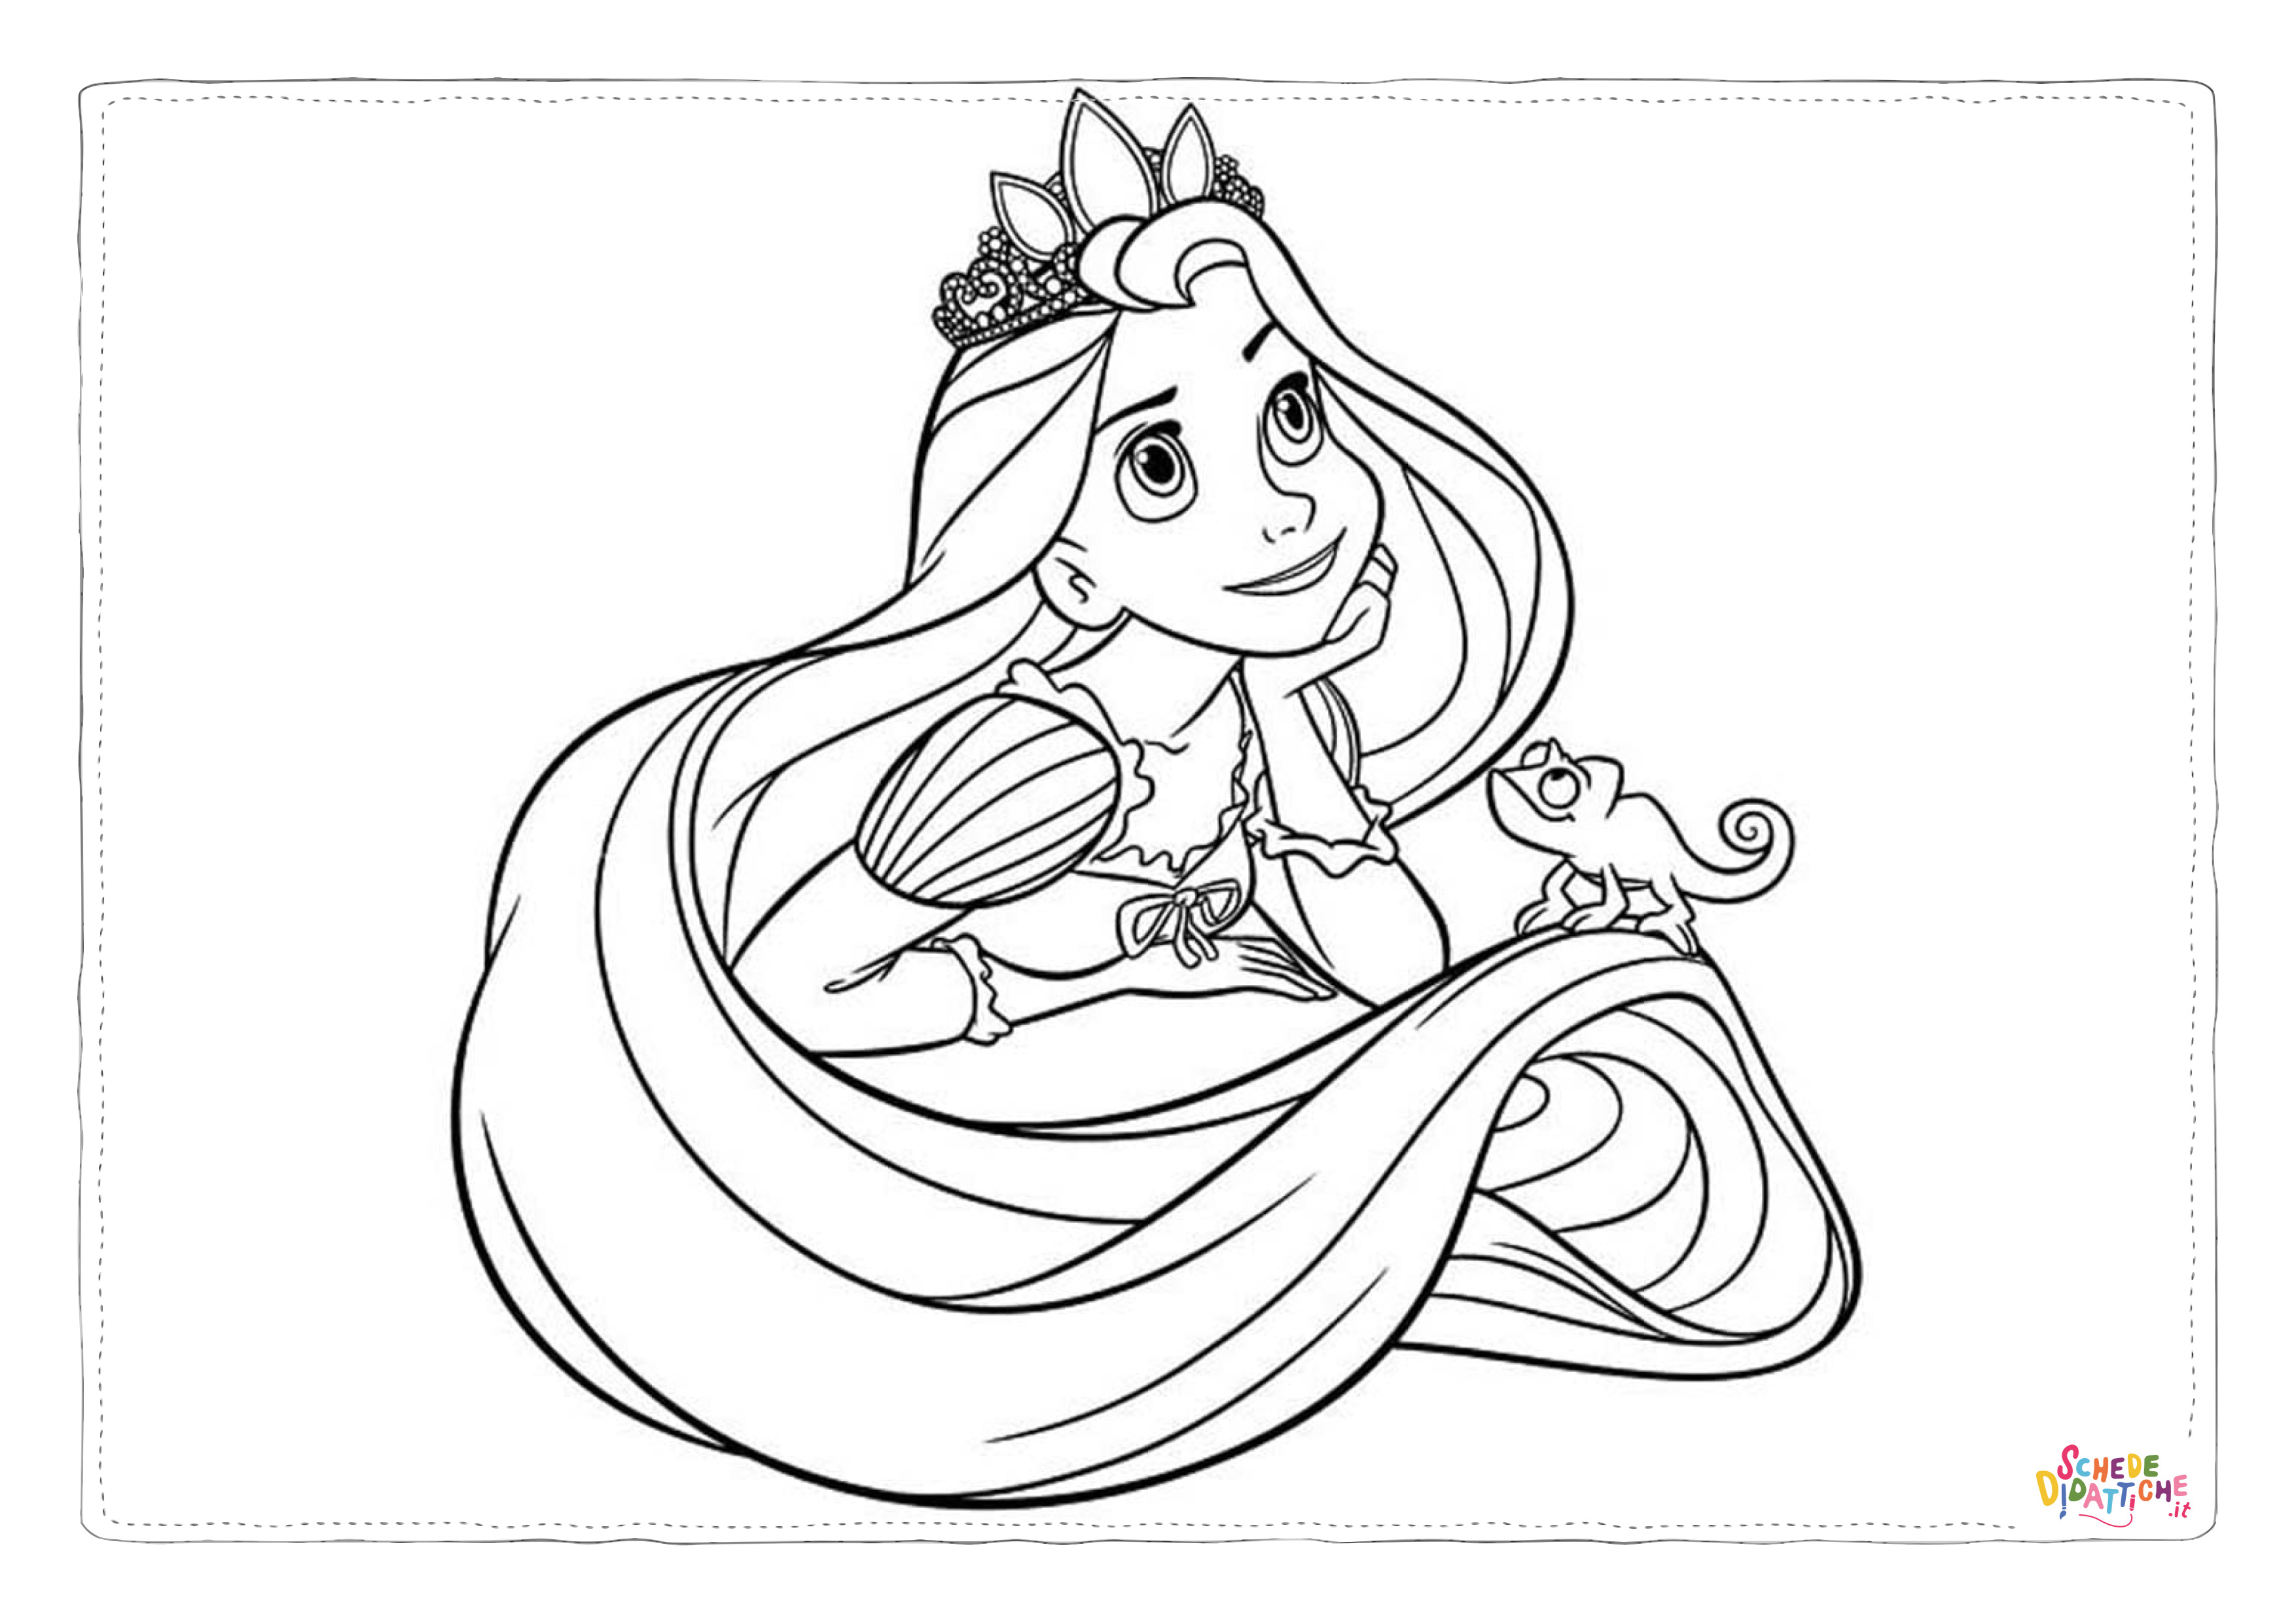 Disegno di Tutte le principesse Disney da stampare e colorare 72